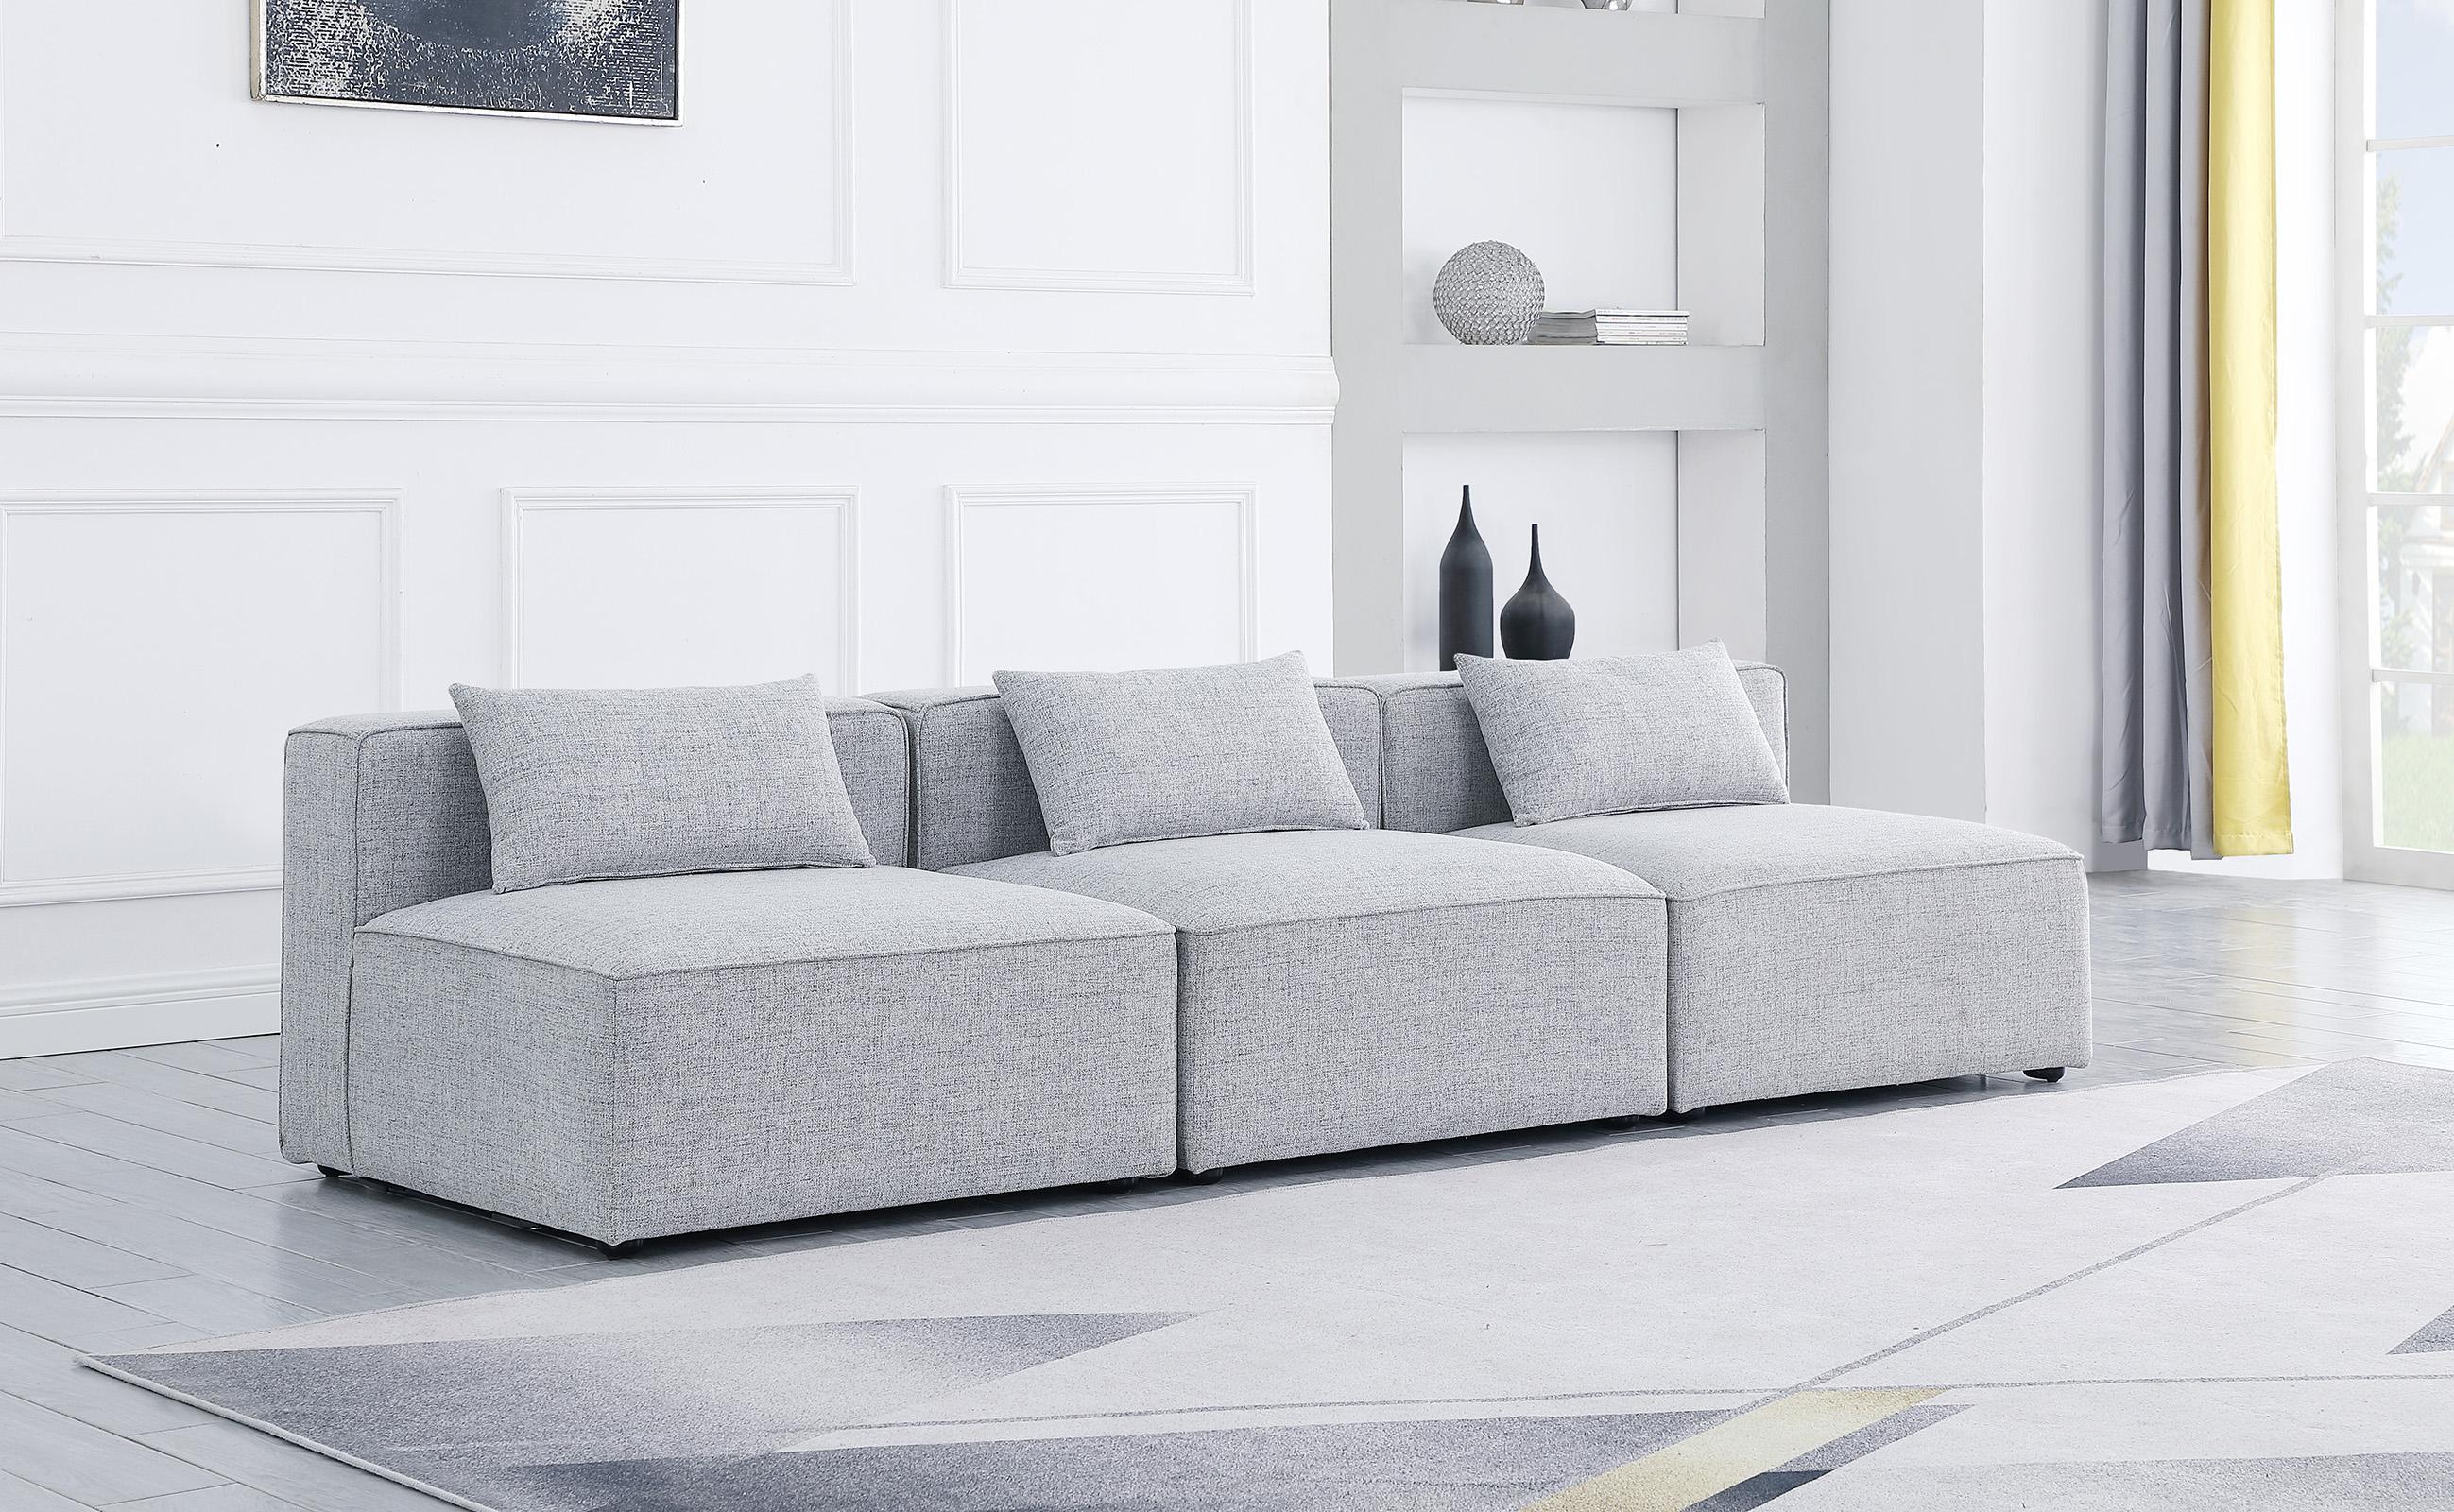 

    
GREY Linen Modular Sofa CUBE 630Grey-S108A Meridian Contemporary Modern
